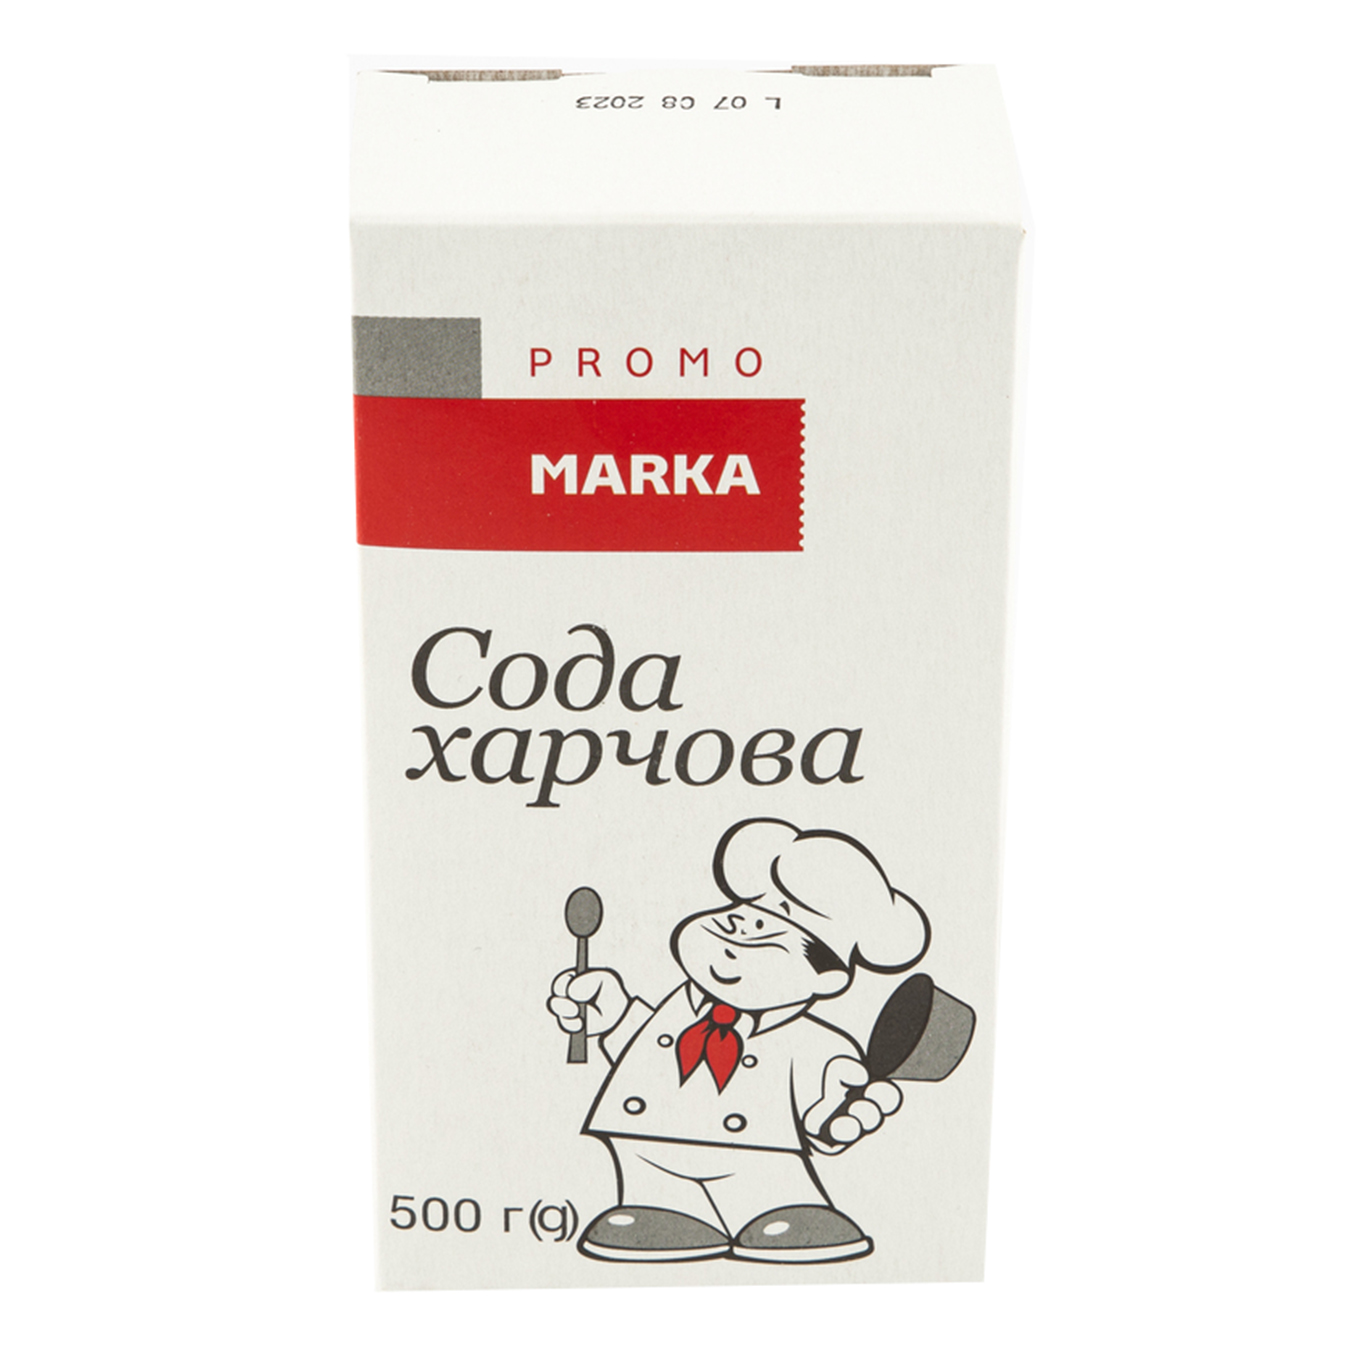 Baking soda Marka Promo cardboard 500g 4